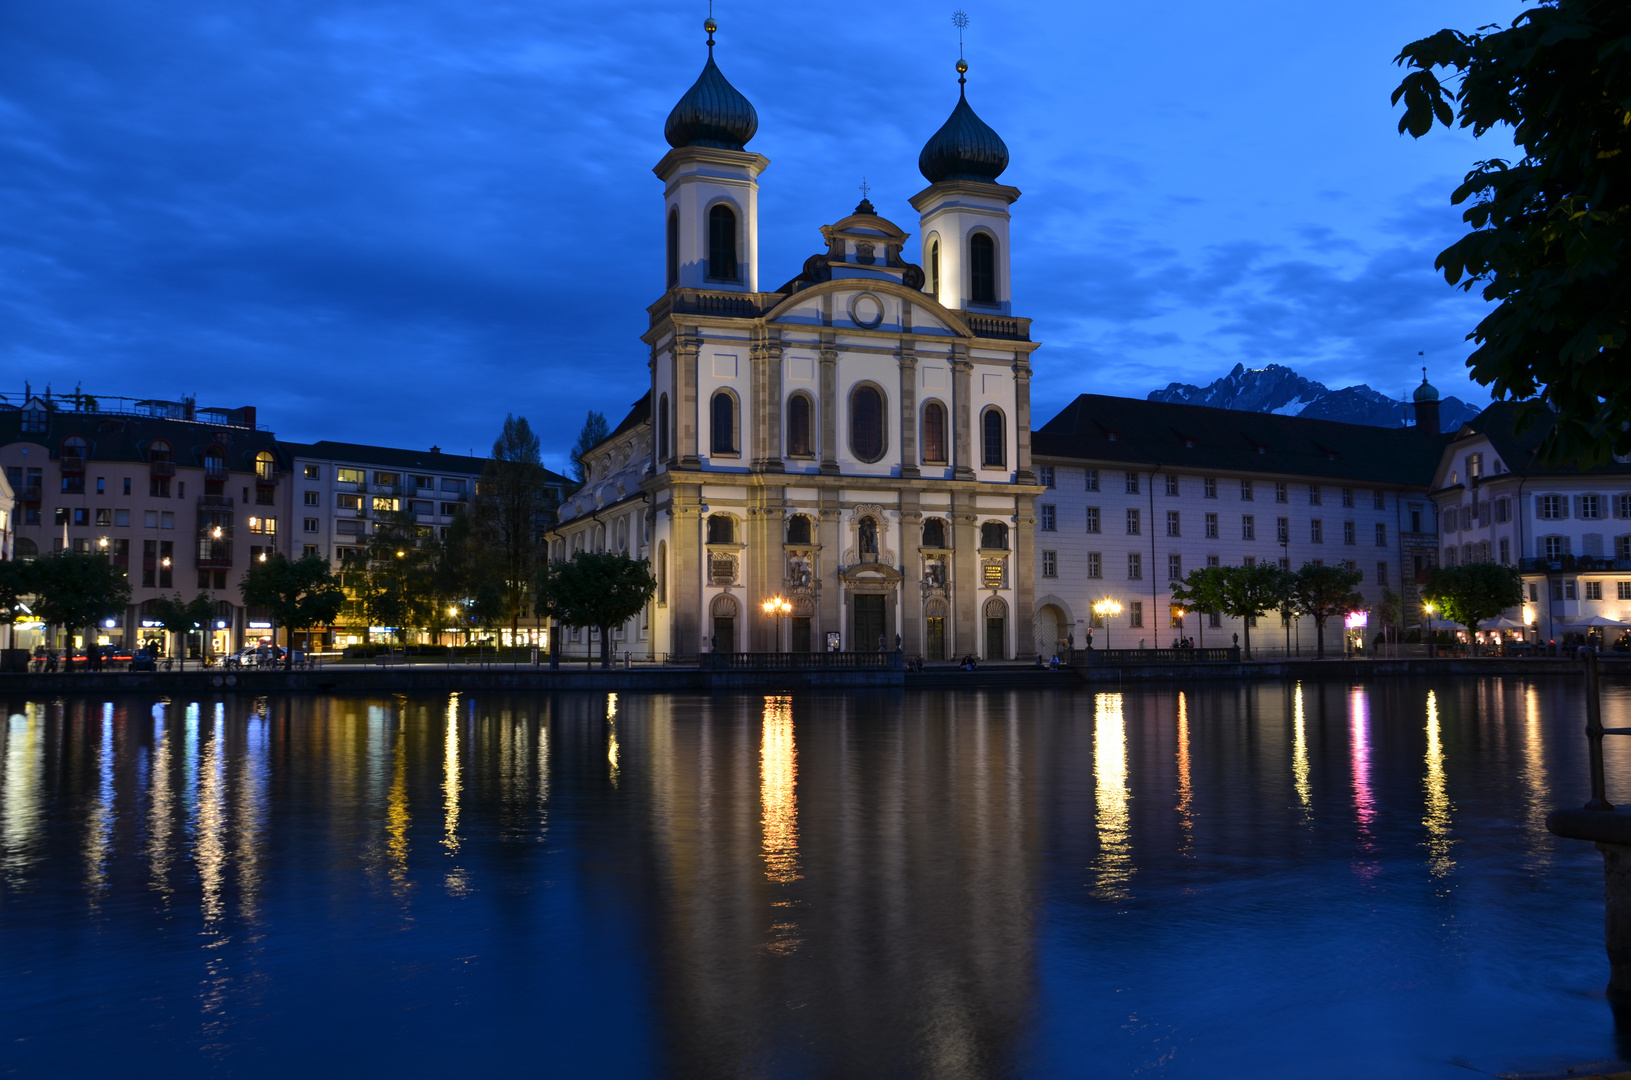 Jesuitenkirche Luzern bei Nacht